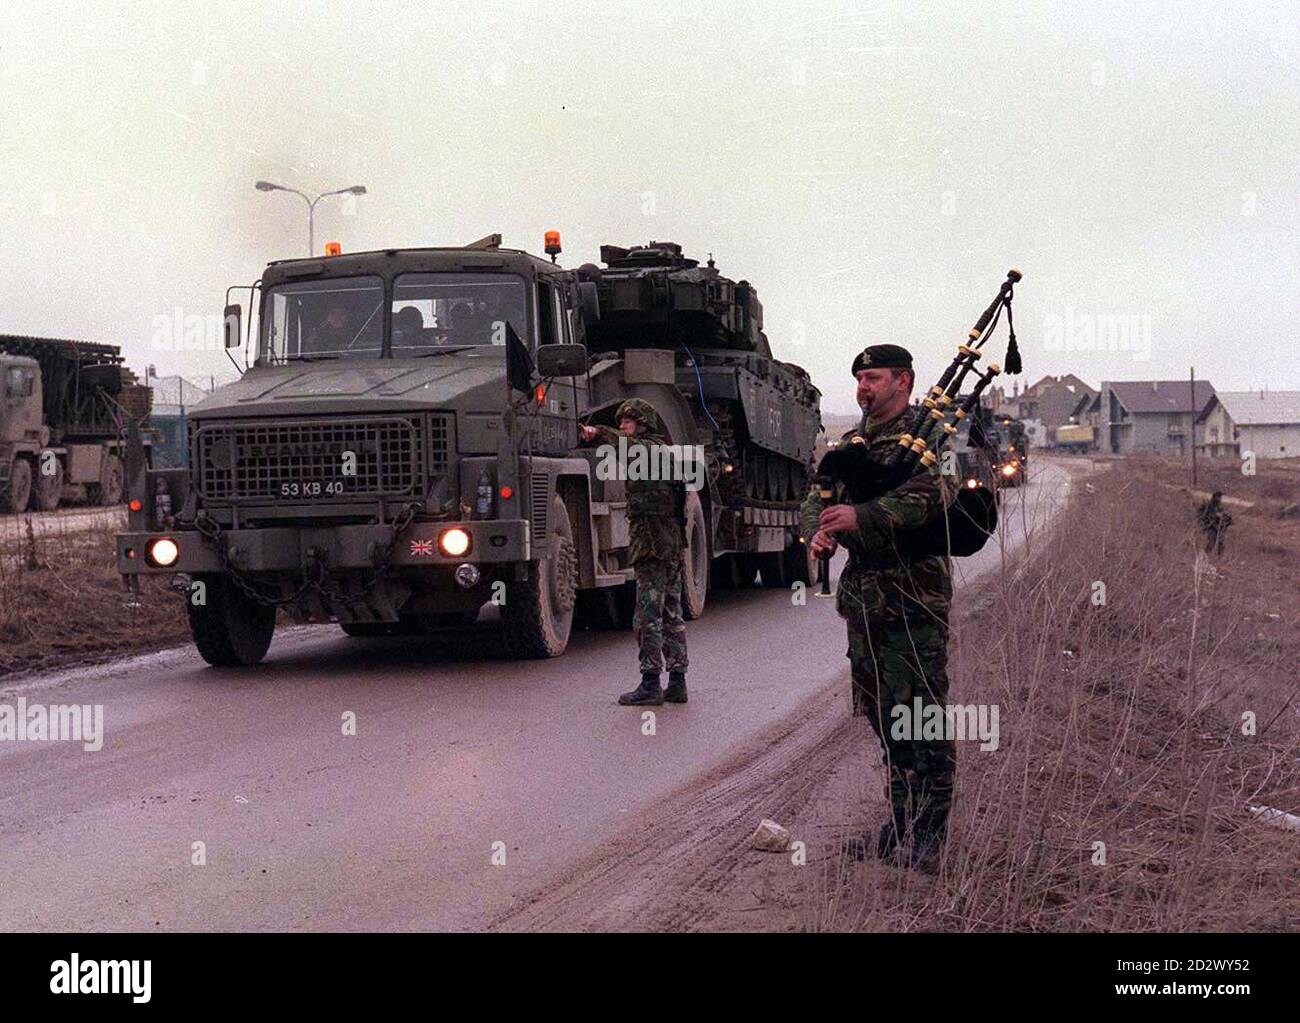 Un solitario Bagpiper ha giocato la marcia regimentale dei Royal Hussars della Regina sulla strada mentre i carri armati di battaglia britannici Challenger, che hanno visto l'ultima azione nella guerra del Golfo del 1991, rotolarono in Bosnia ieri (mercoledì) per la prima volta, portando pesante forza di fuoco per rinforzare la forza di pace della NATO. Un convoglio di trasportatori che trasportavano 12 Challenger, ciascuno armato di una pistola da 120 mm e del peso di oltre 60 tonnellate, arrivò alla base di rifornimento britannica a Kupres, Bosnia centrale. Foto Stock